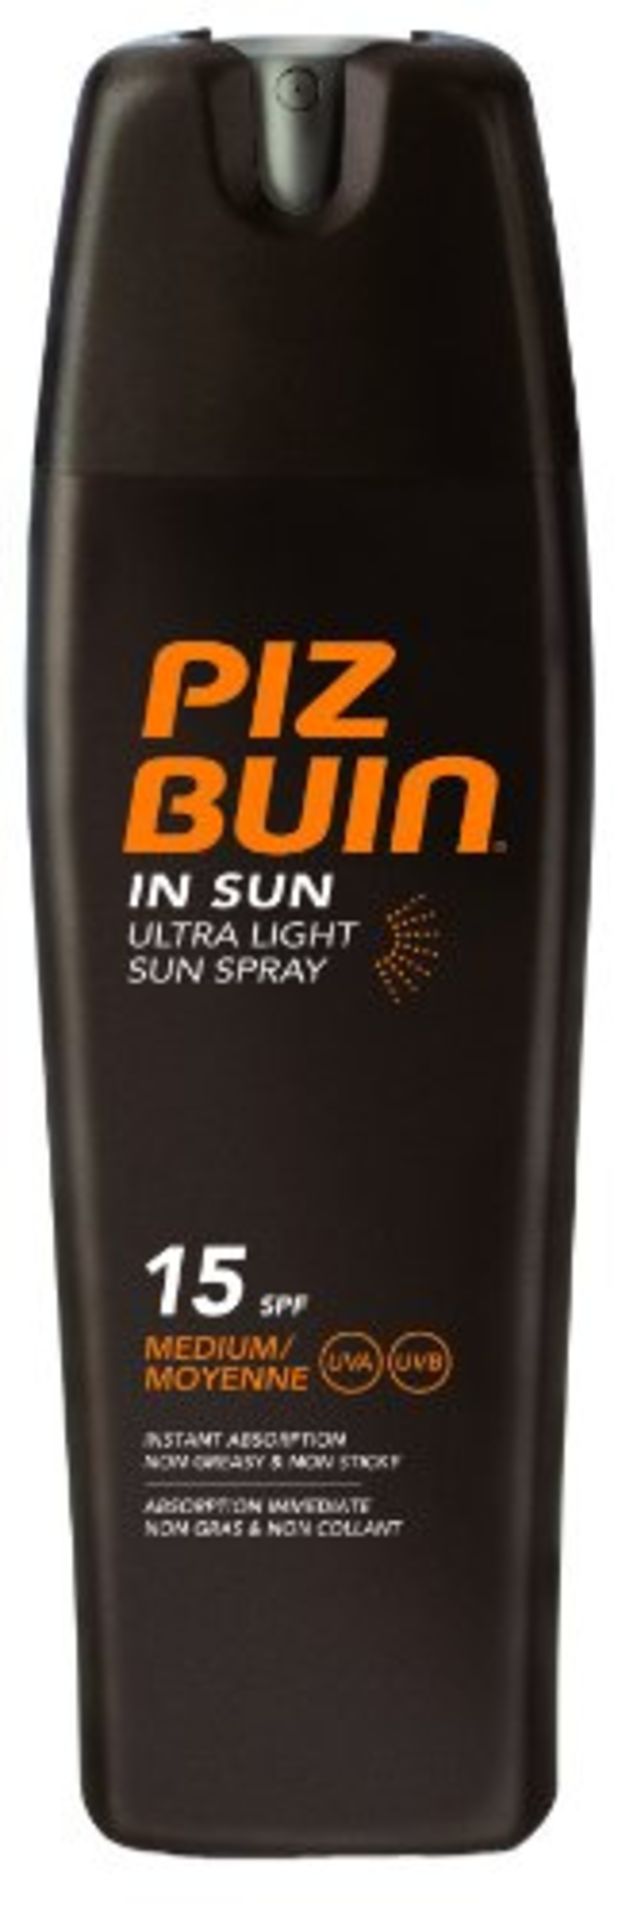 V Brand New Piz Buin 200ml In Sun Ultra Light Sun Spray 15 SPF Medium